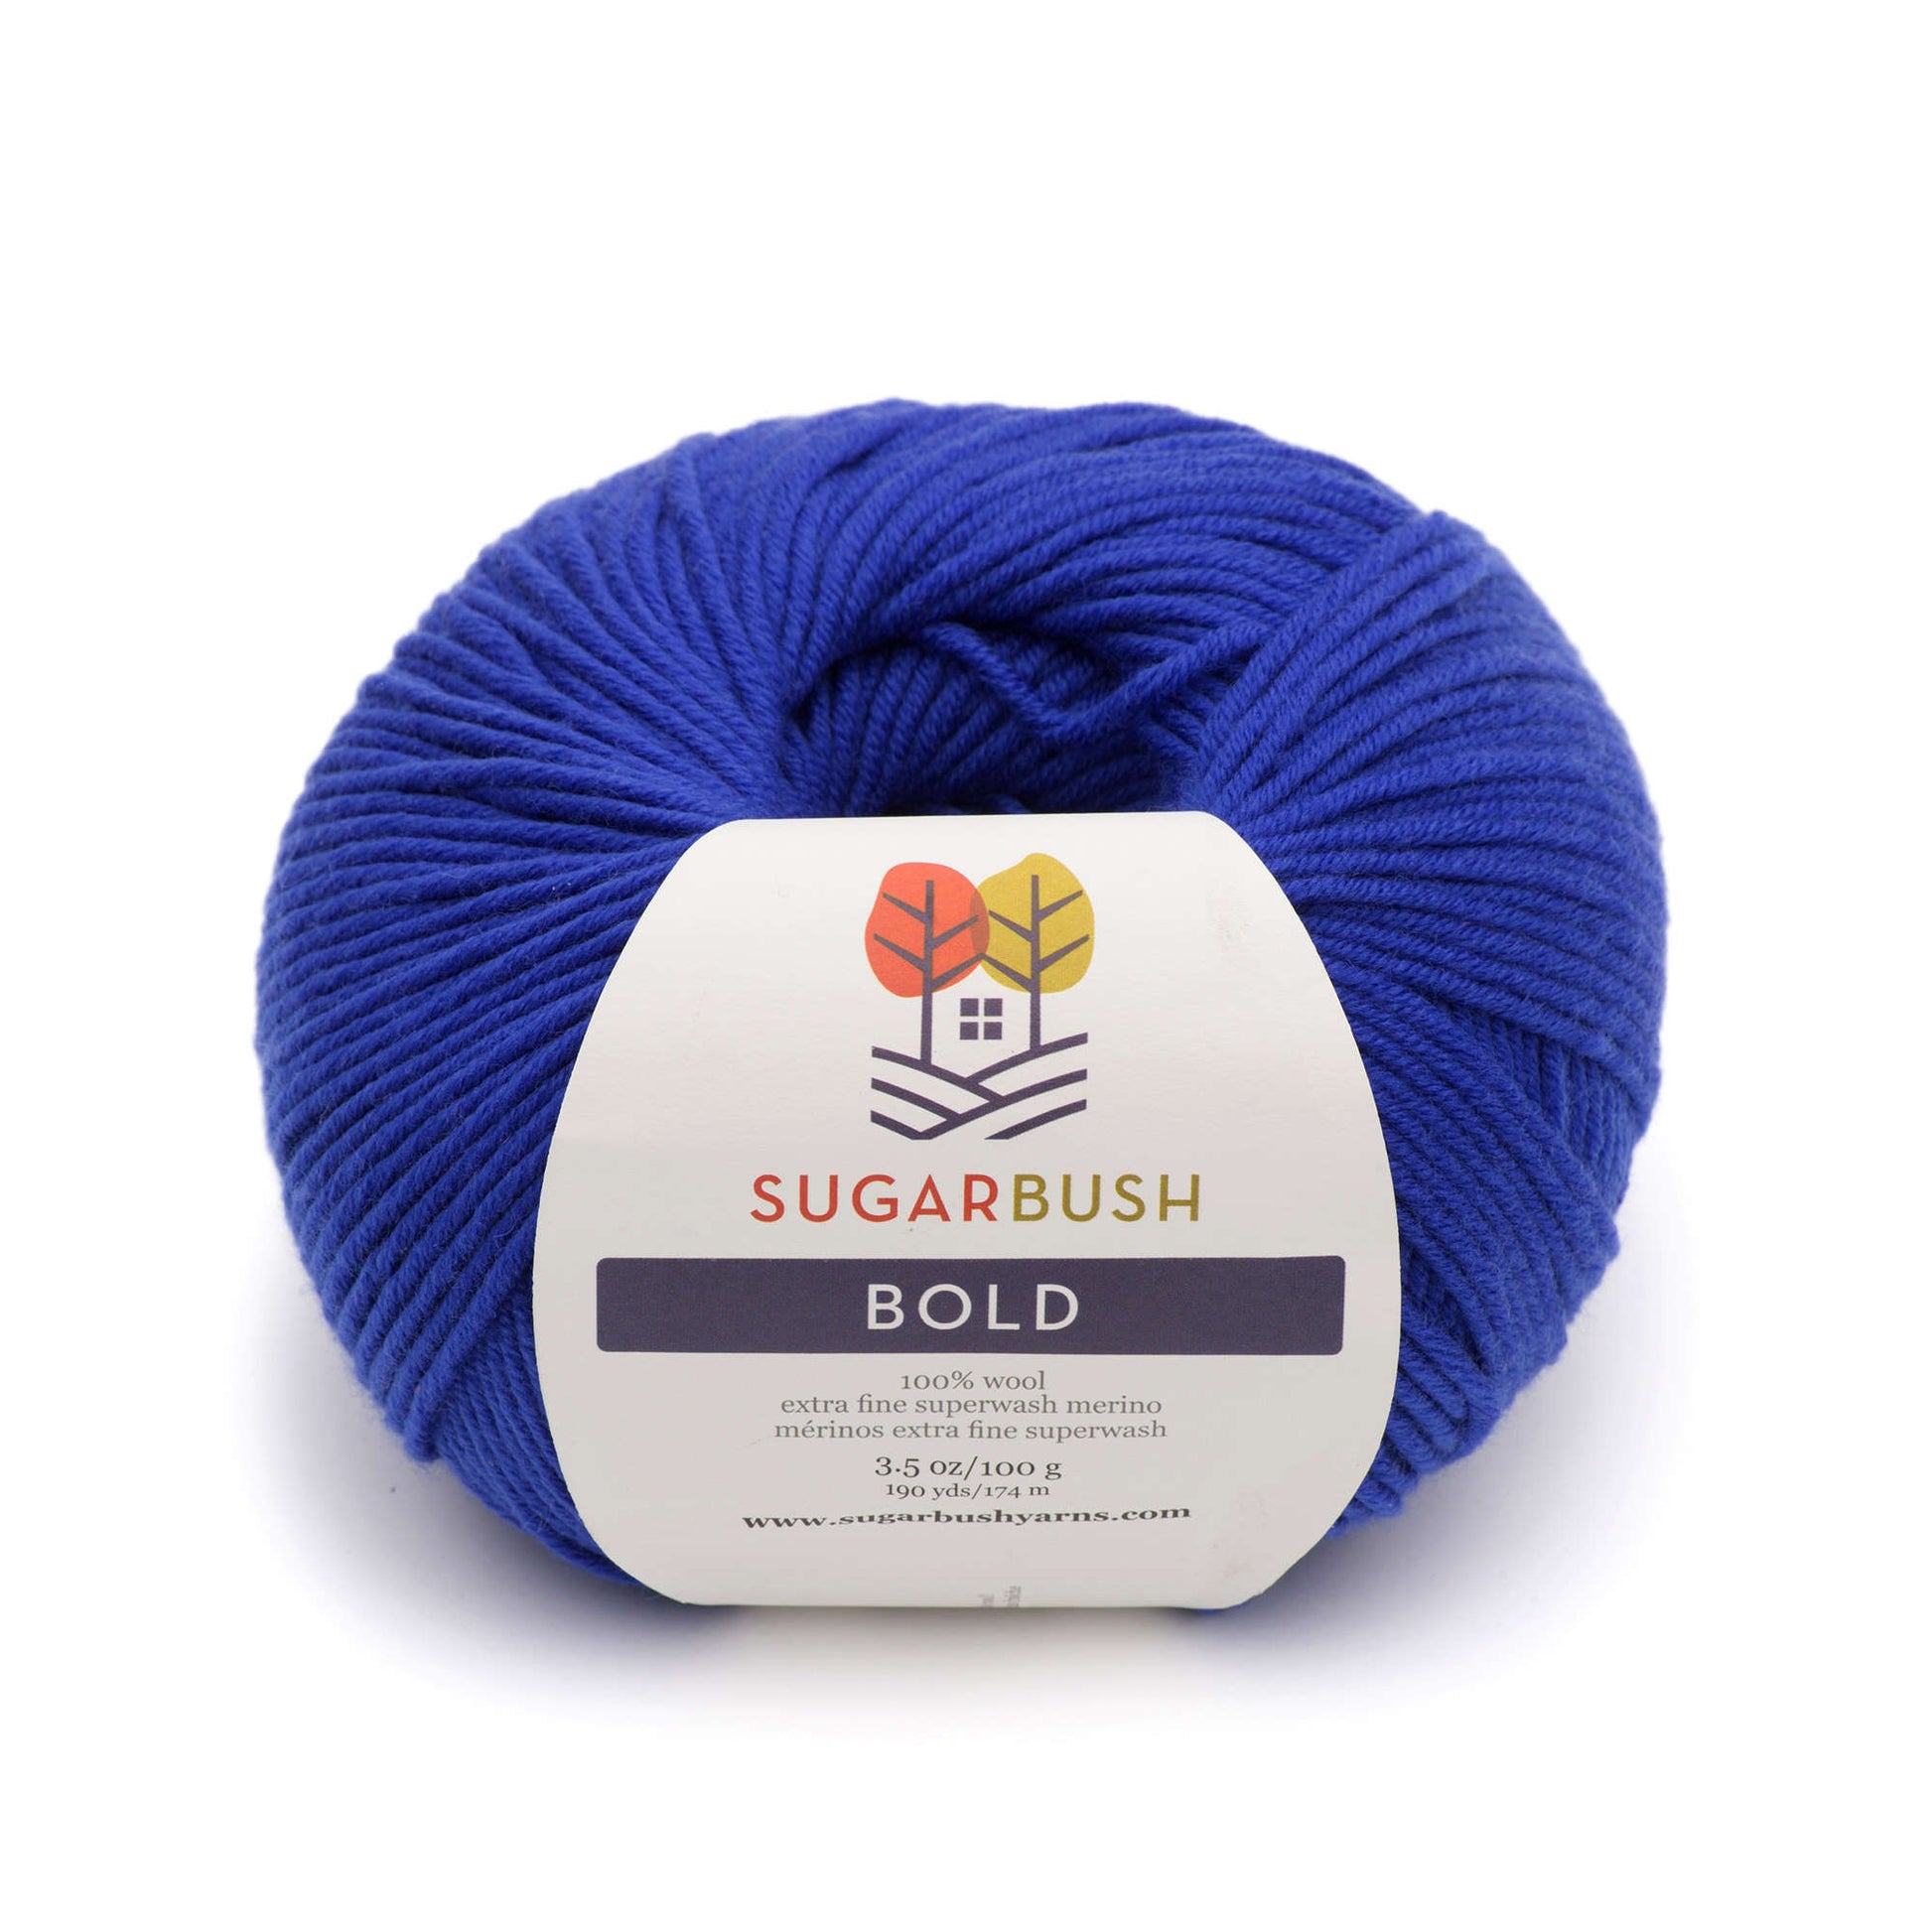 Sugar Bush Bold Yarn - Discontinued Trinity Bay Blue